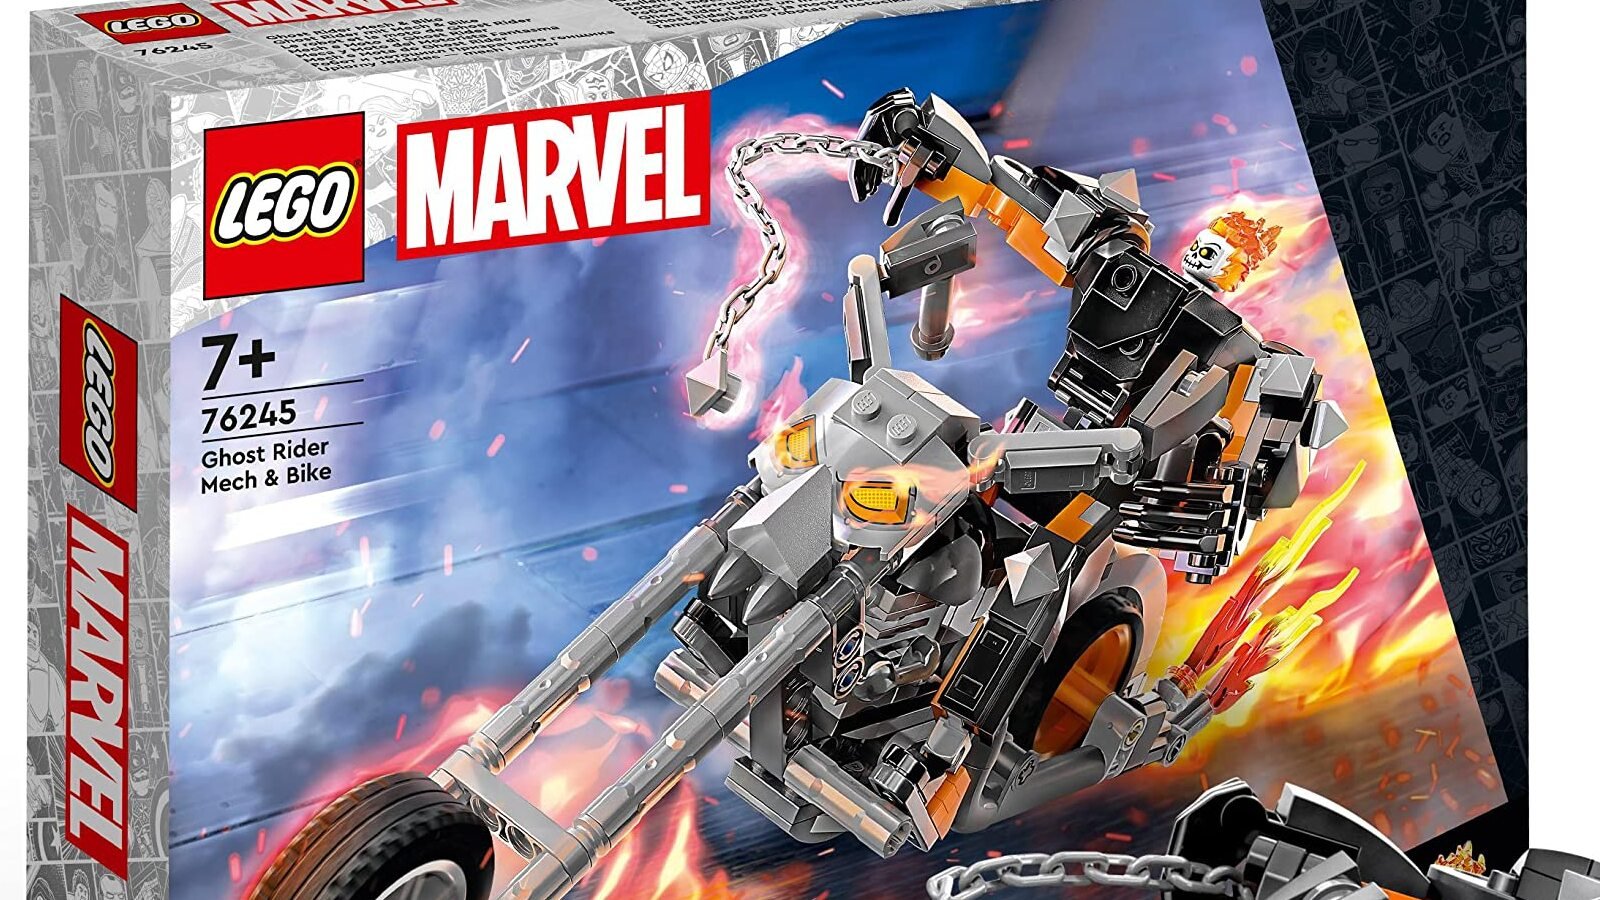 Marvel: l’eccezionale set LEGO di Ghost Rider è finalmente in offerta su Amazon